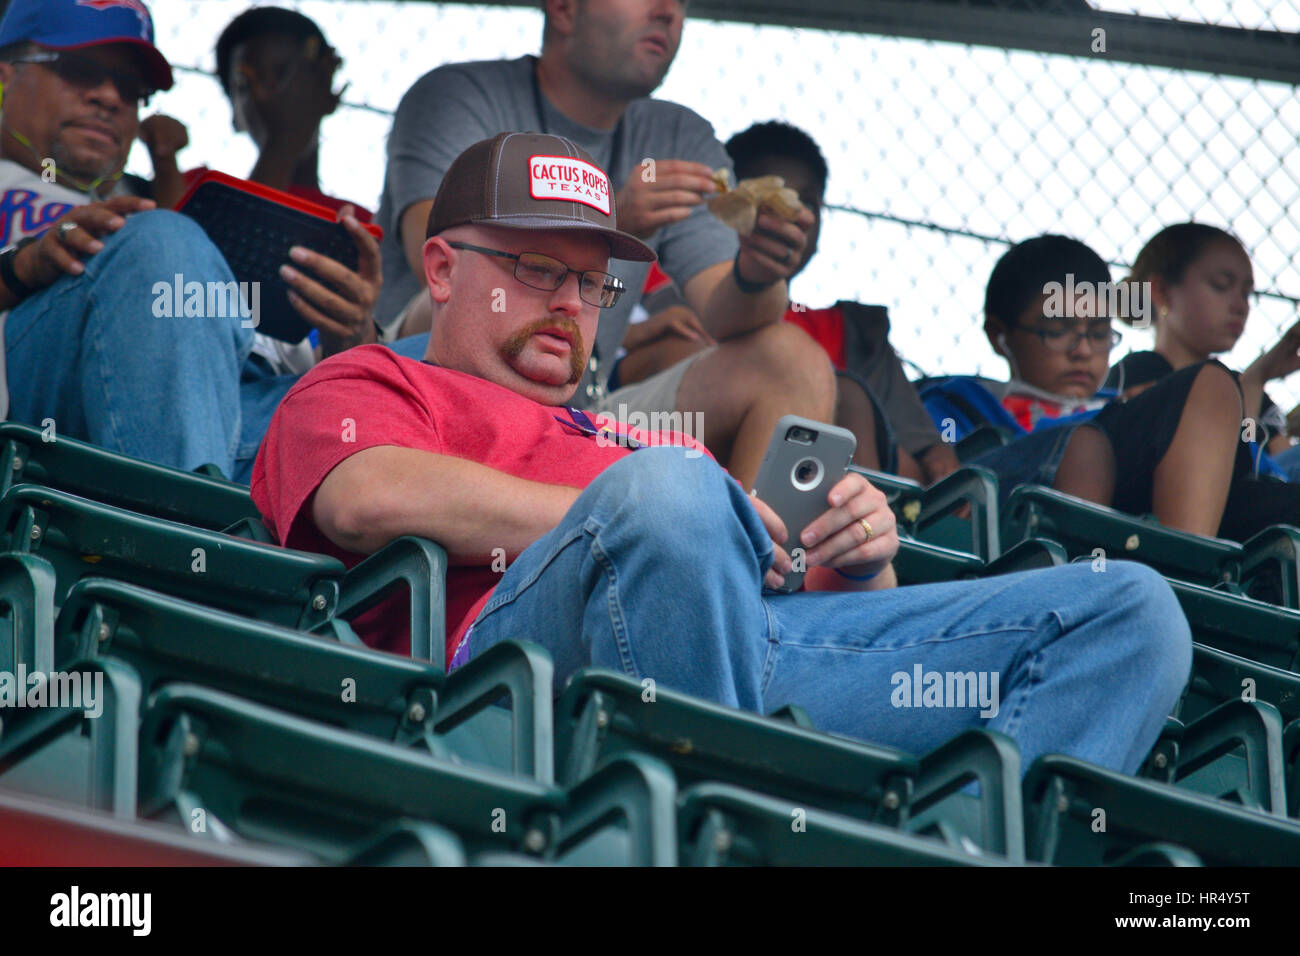 Ein Mann bei einem sportlichen Ereignis SMS auf seinem Handy anstatt das Spiel beobachten. Stockfoto